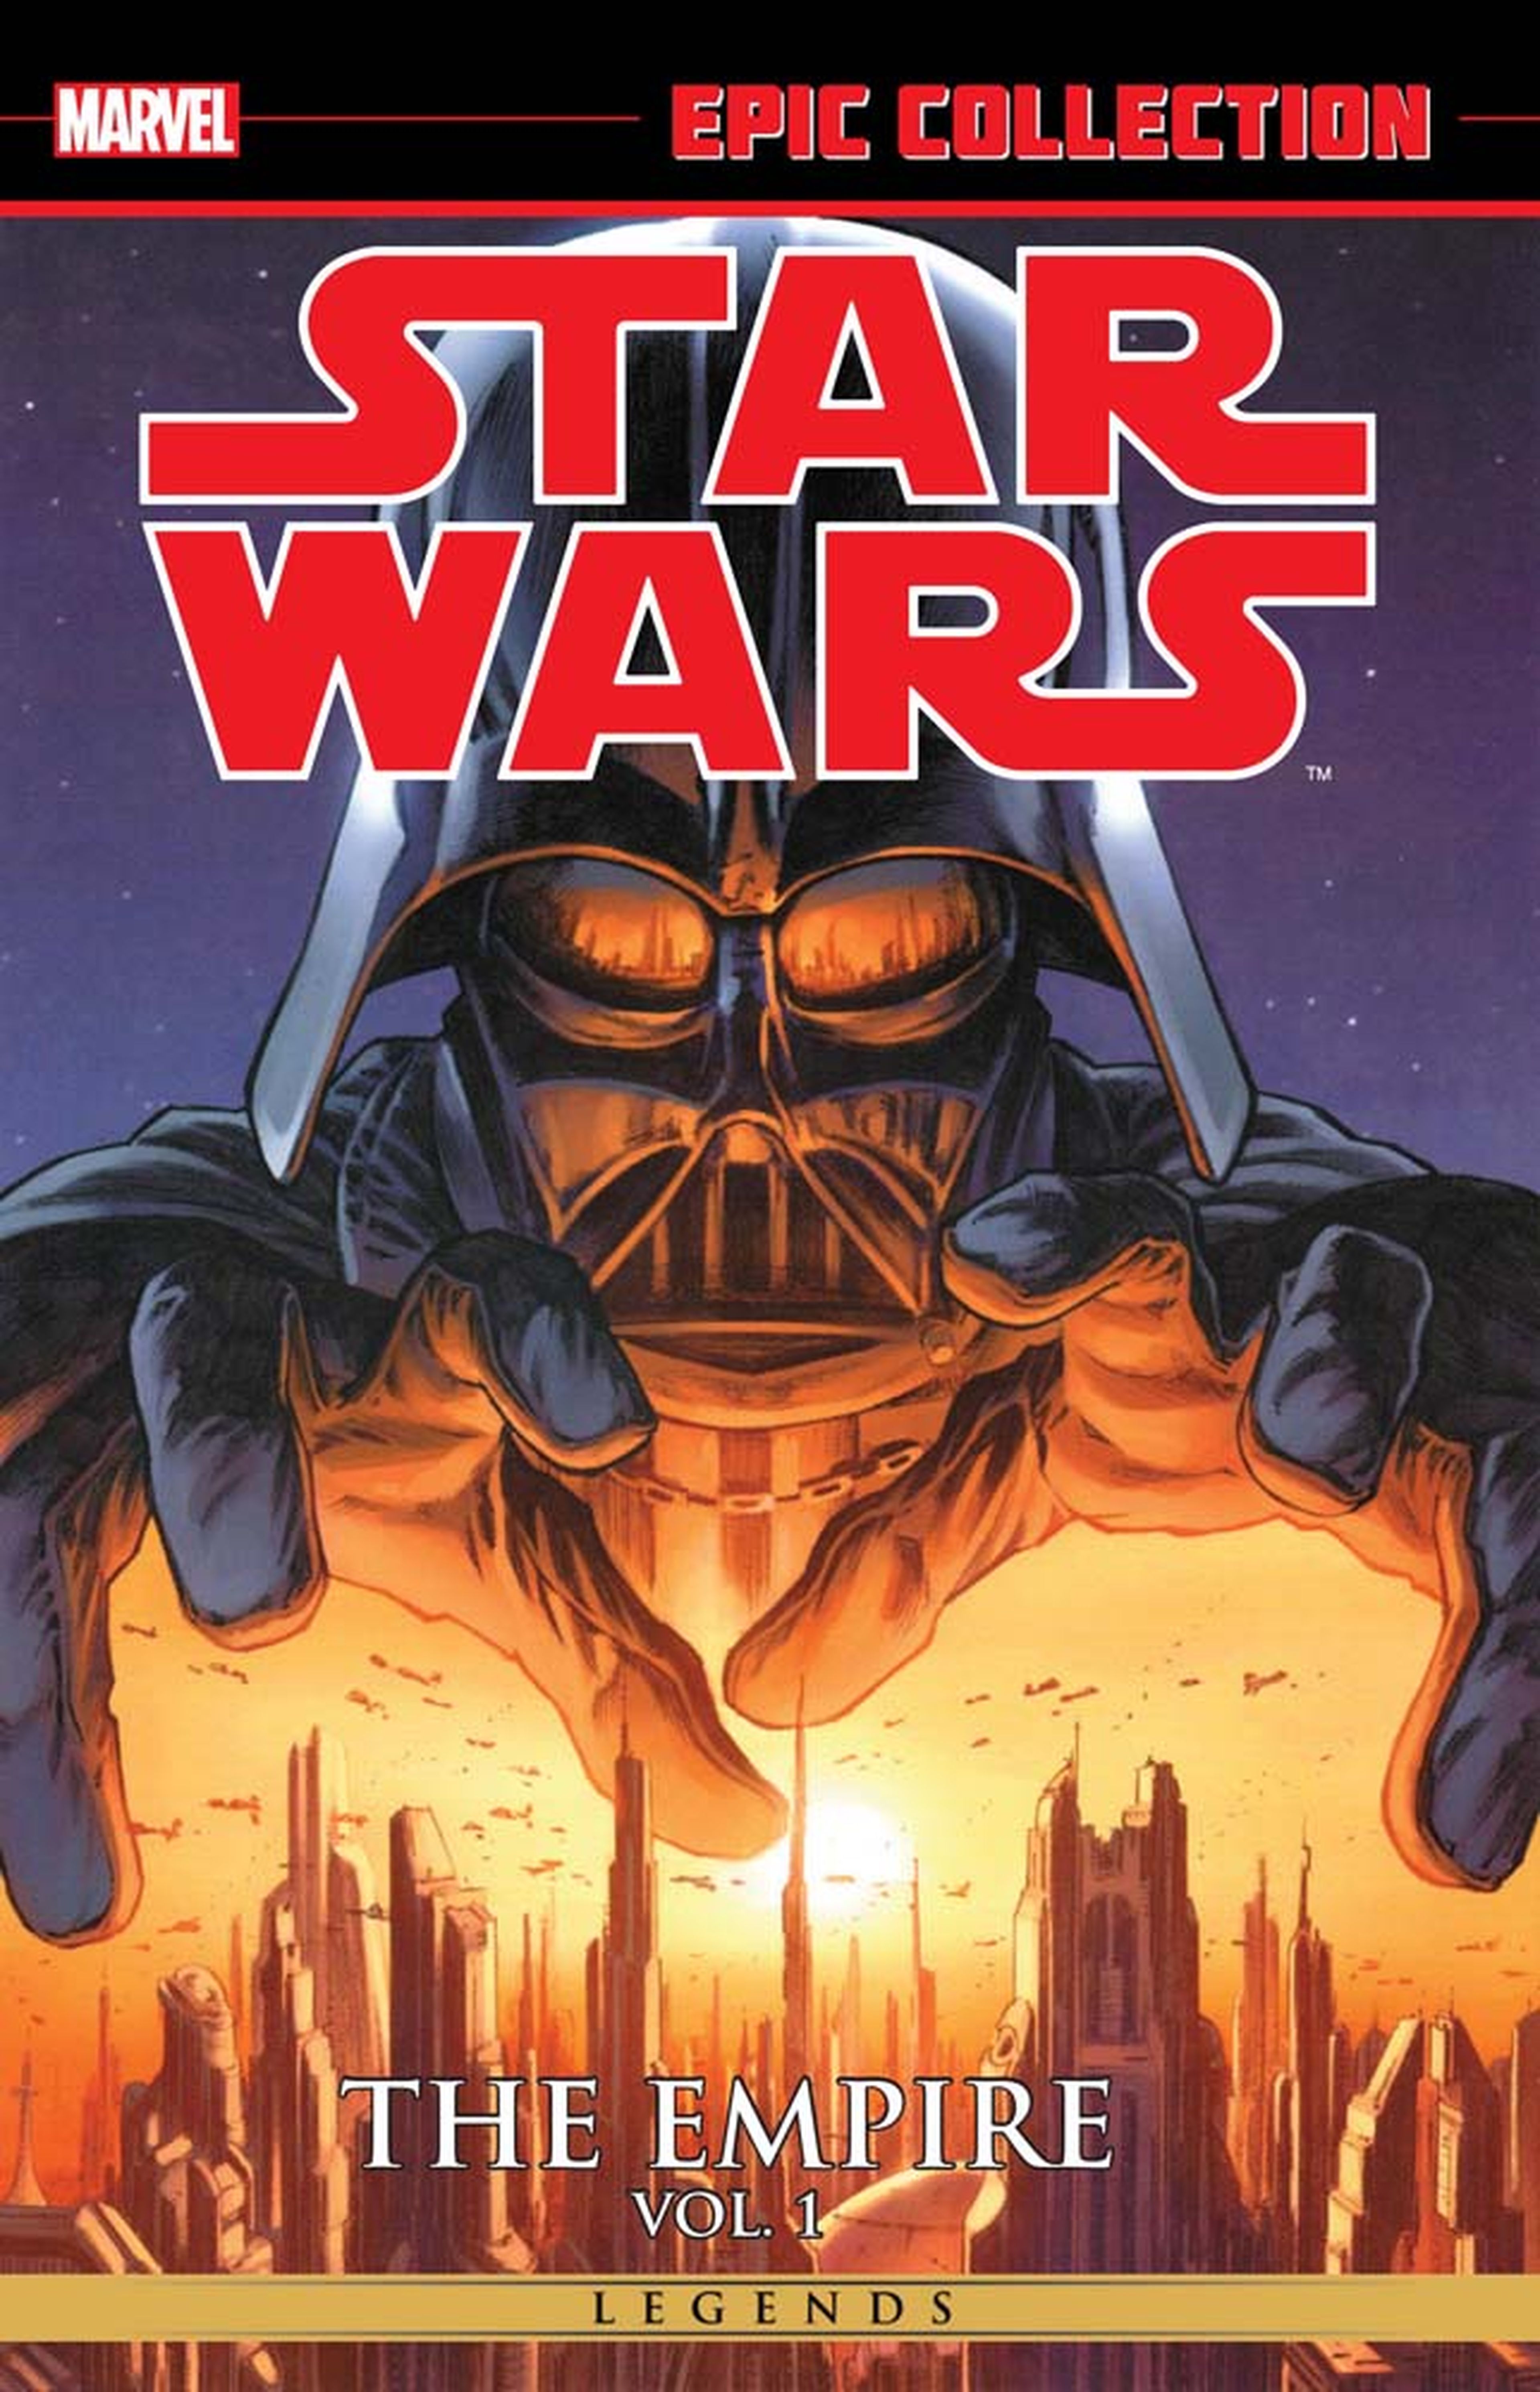 Marvel reeditará los cómics de Star Wars de Dark Horse